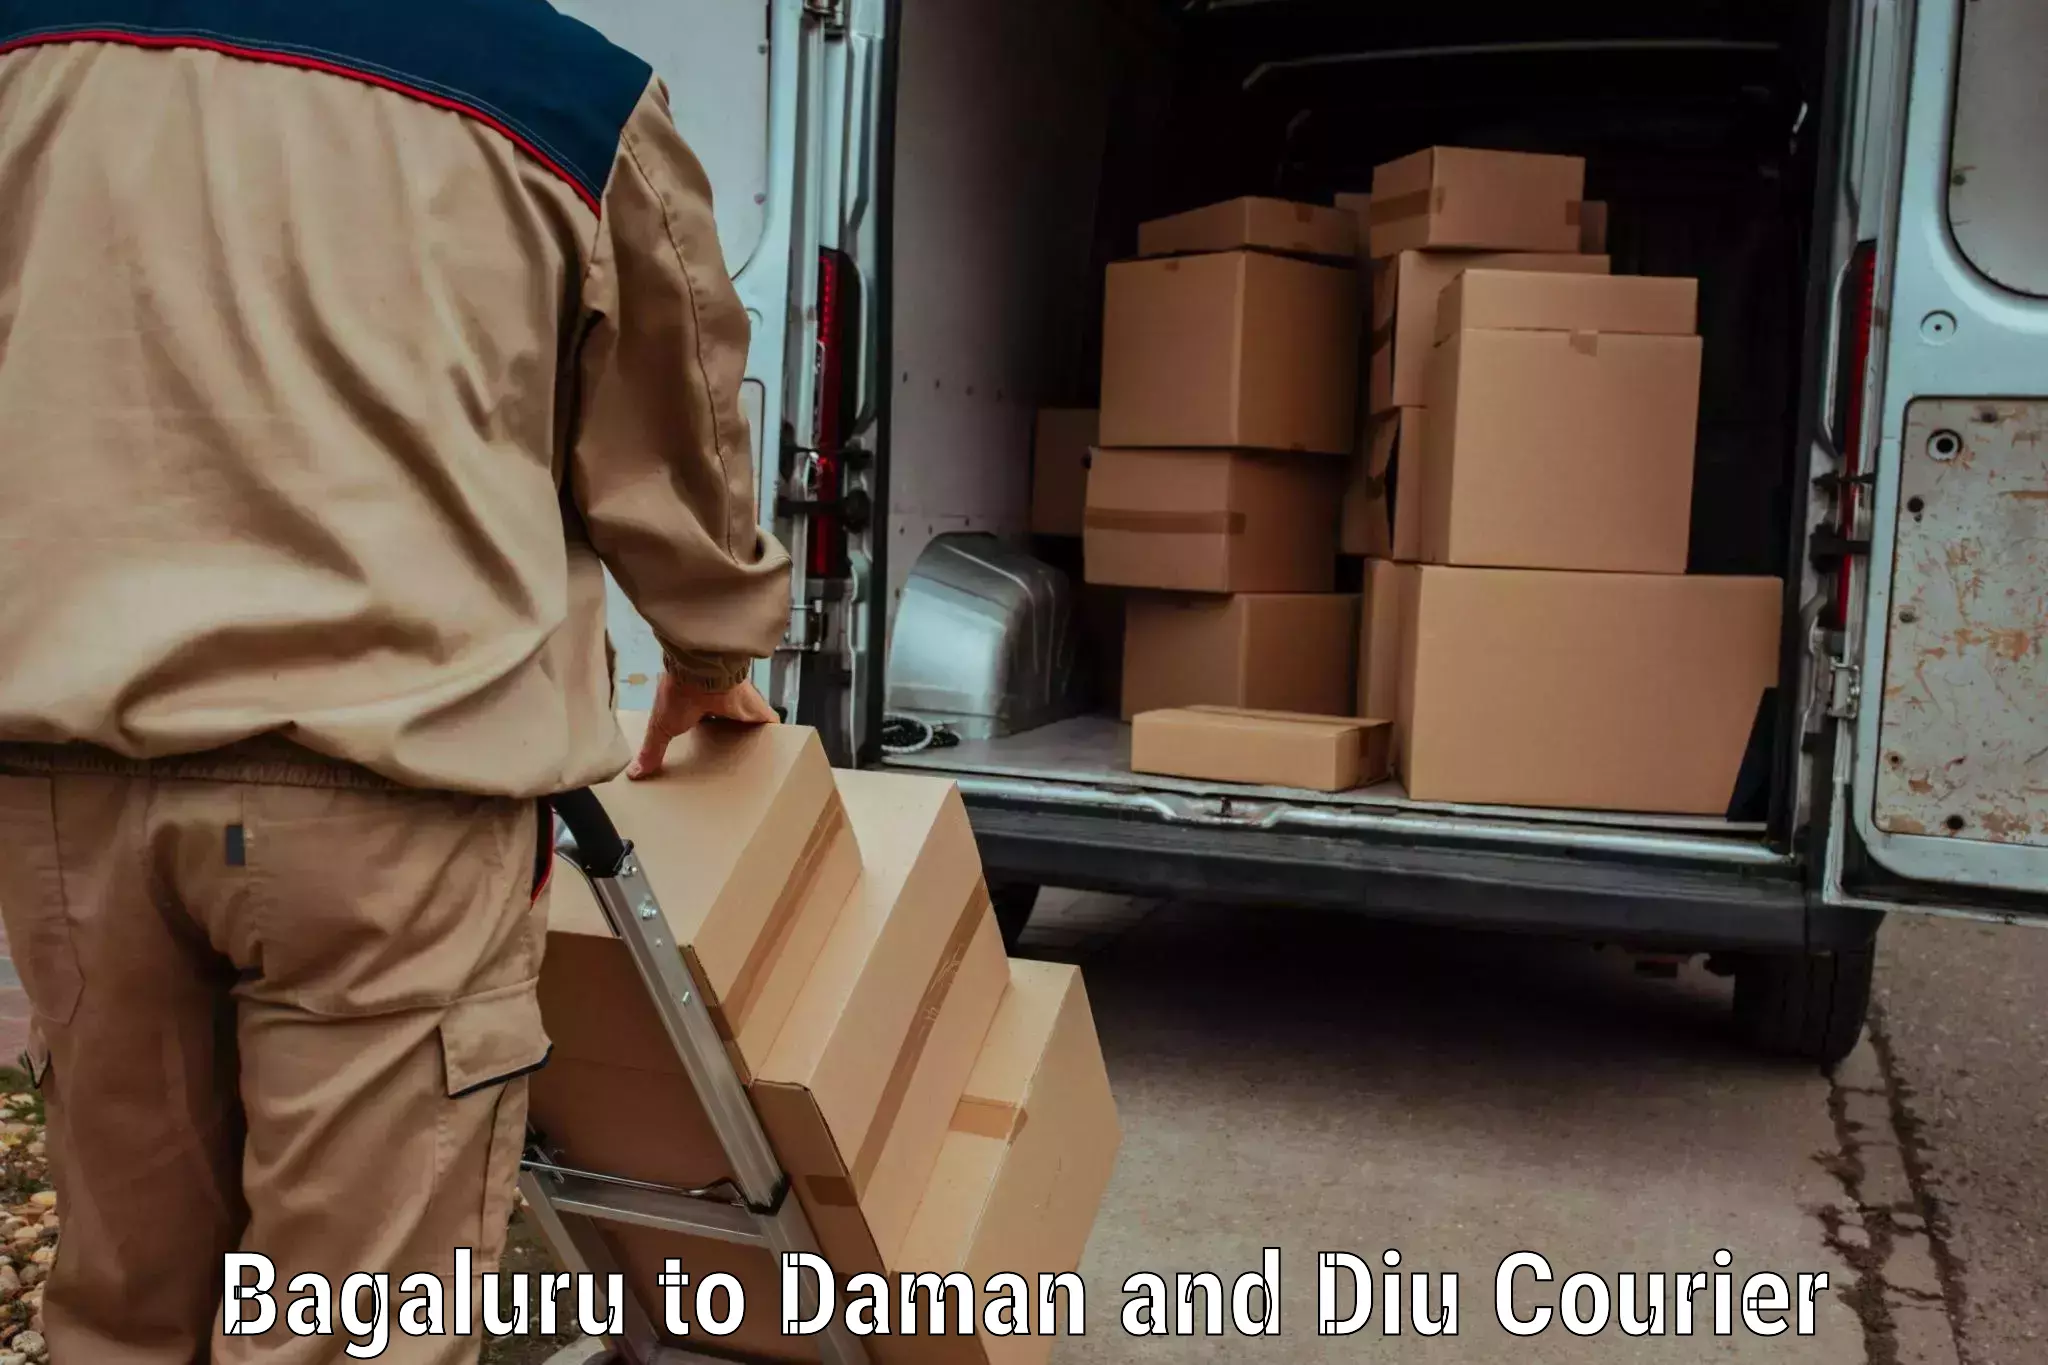 Baggage delivery optimization Bagaluru to Daman and Diu